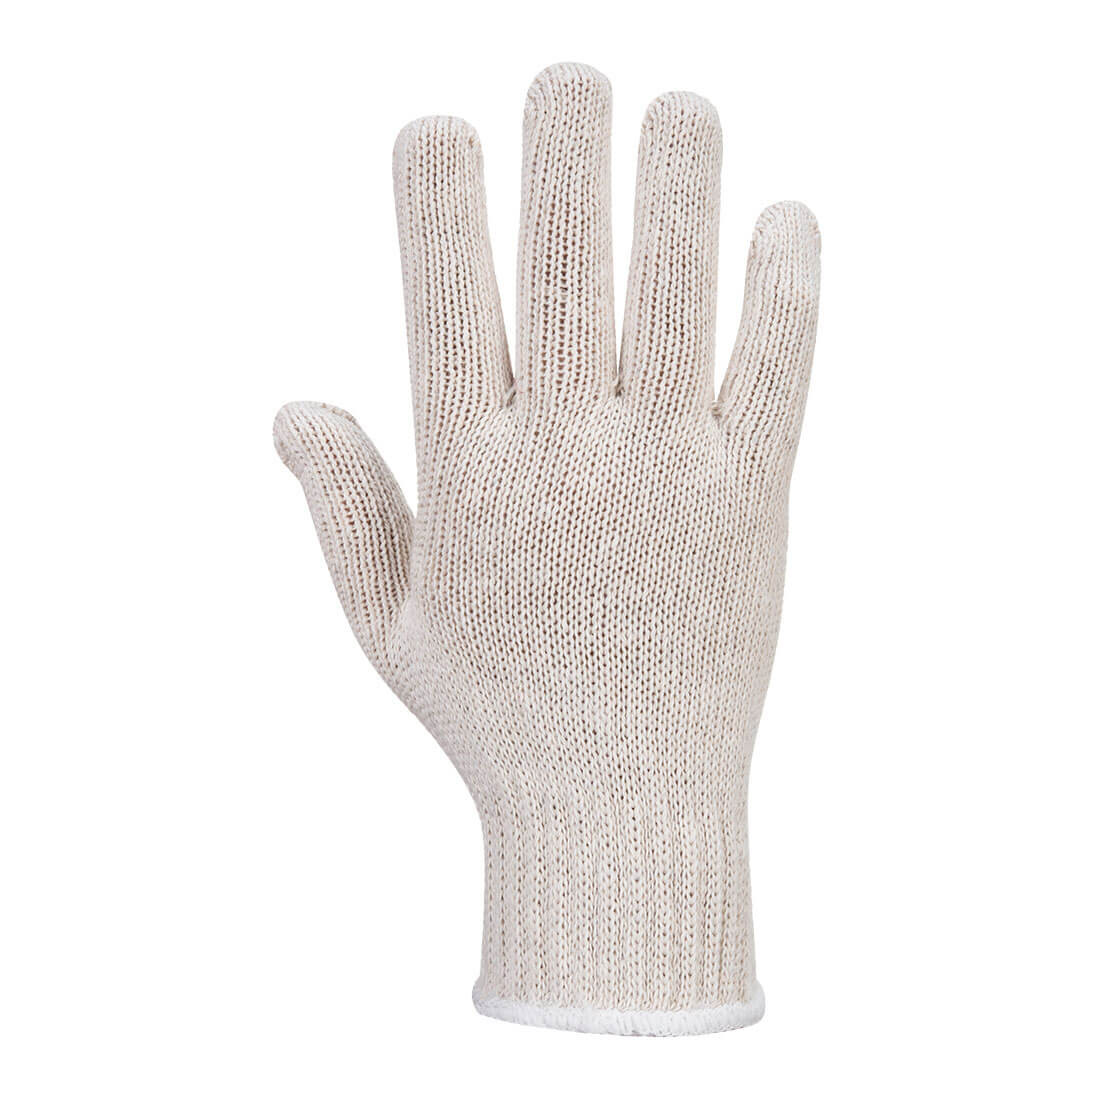 Sous-gants tricot (288 paires) - Les équipements de protection individuelle